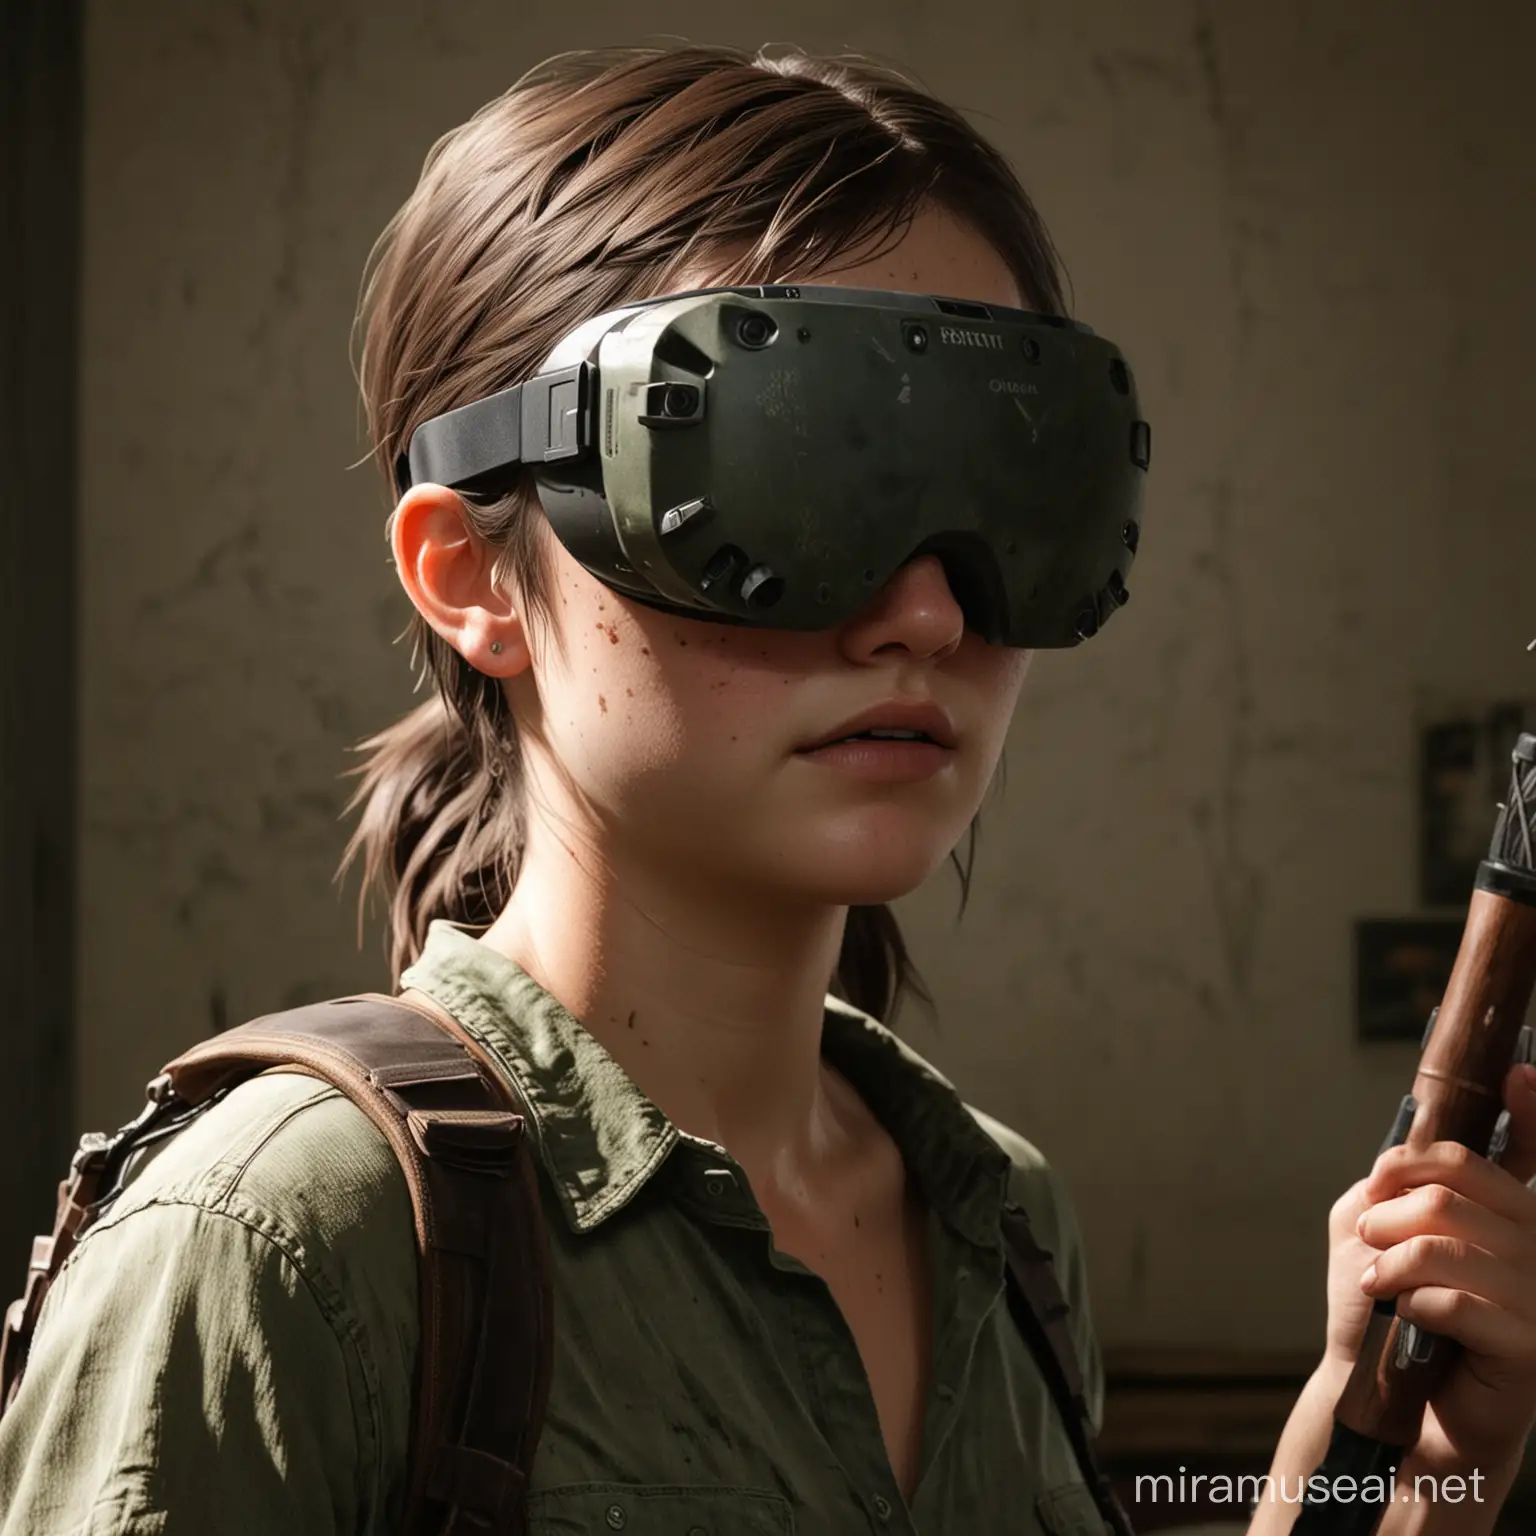 yo quiero generar una imagen sobre una chica con gafas de realidad virtual jugando the last of us